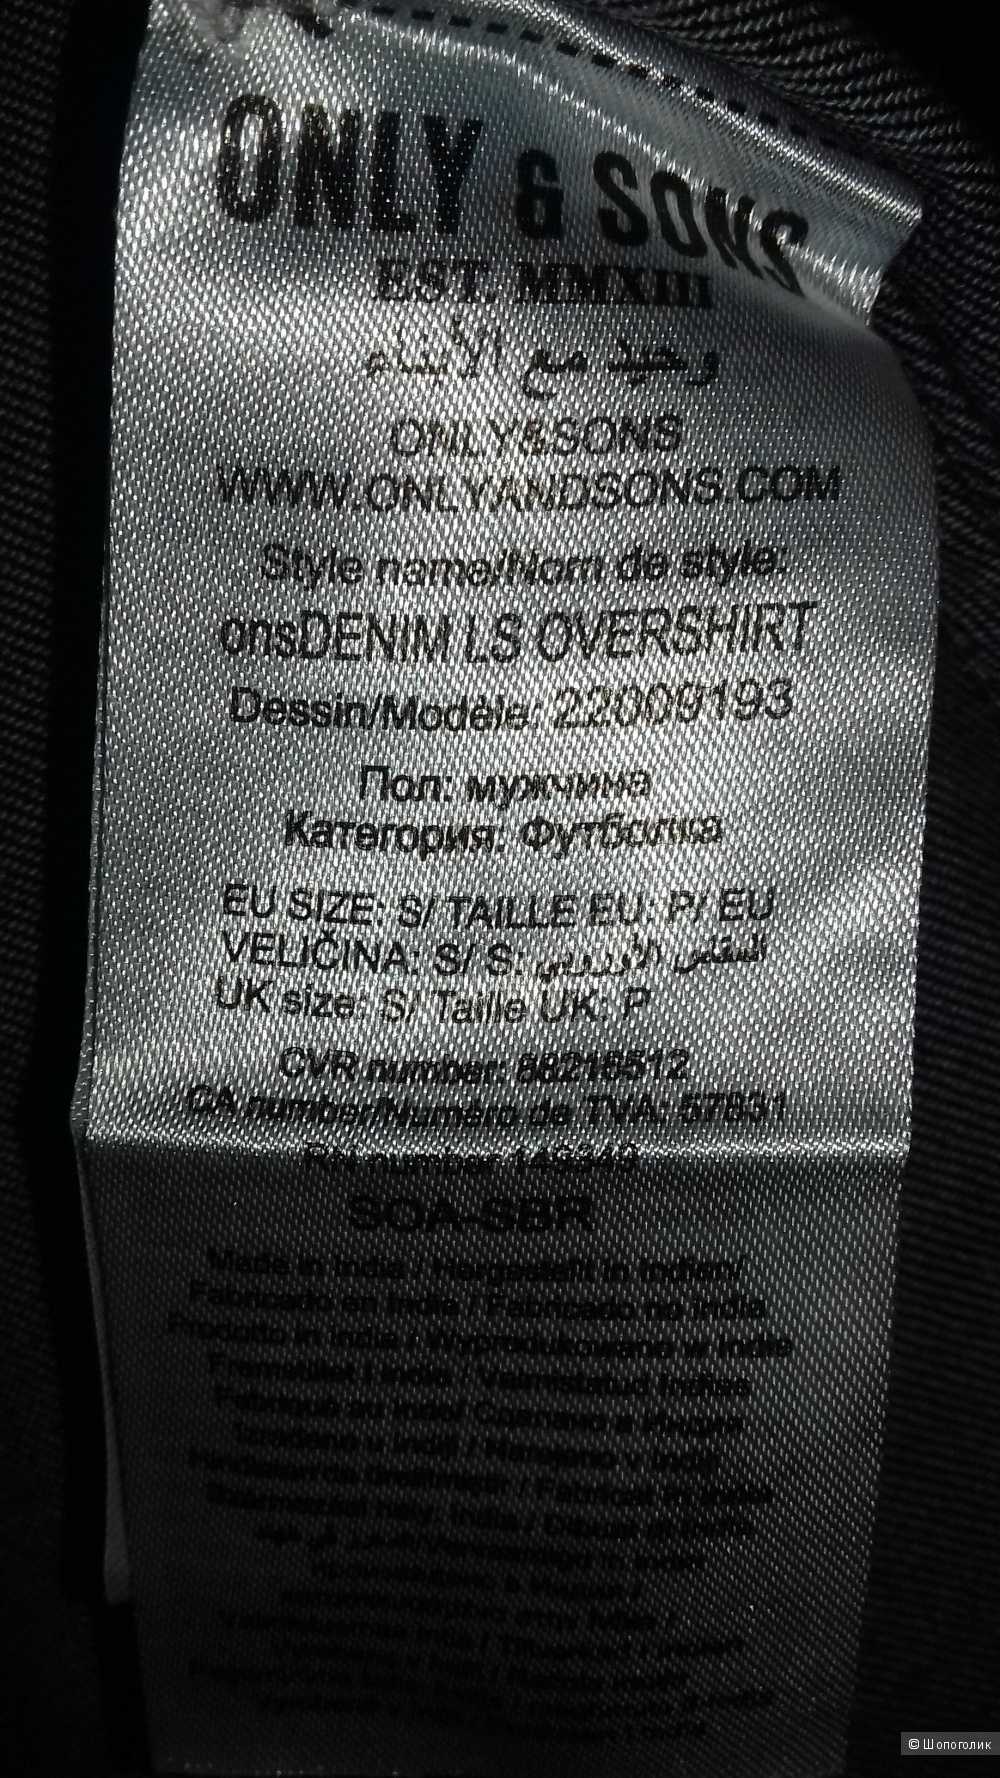 Джинсовая рубашка, Only & Sons, S